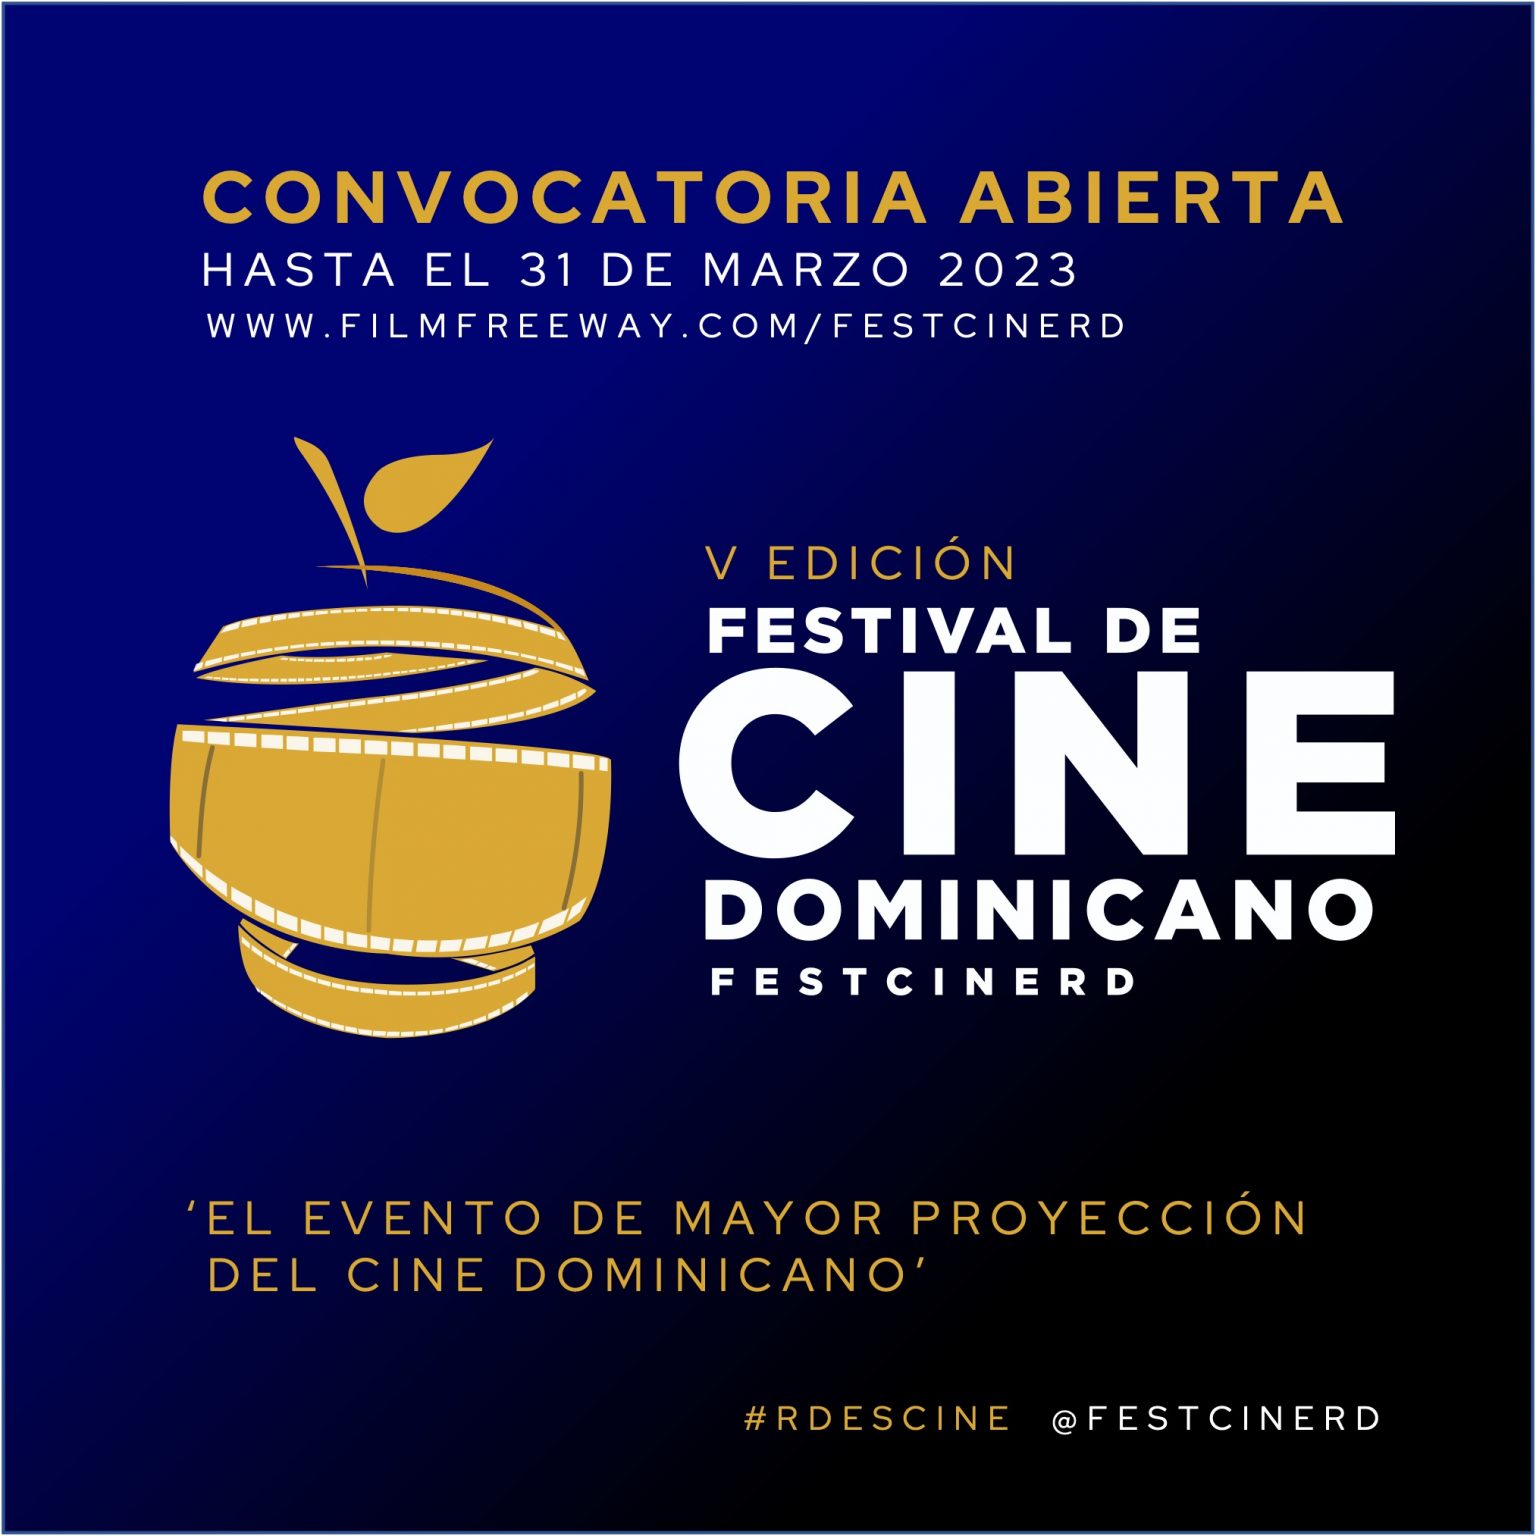 Festival de Cine Dominicano RD abre convocatoria 2023